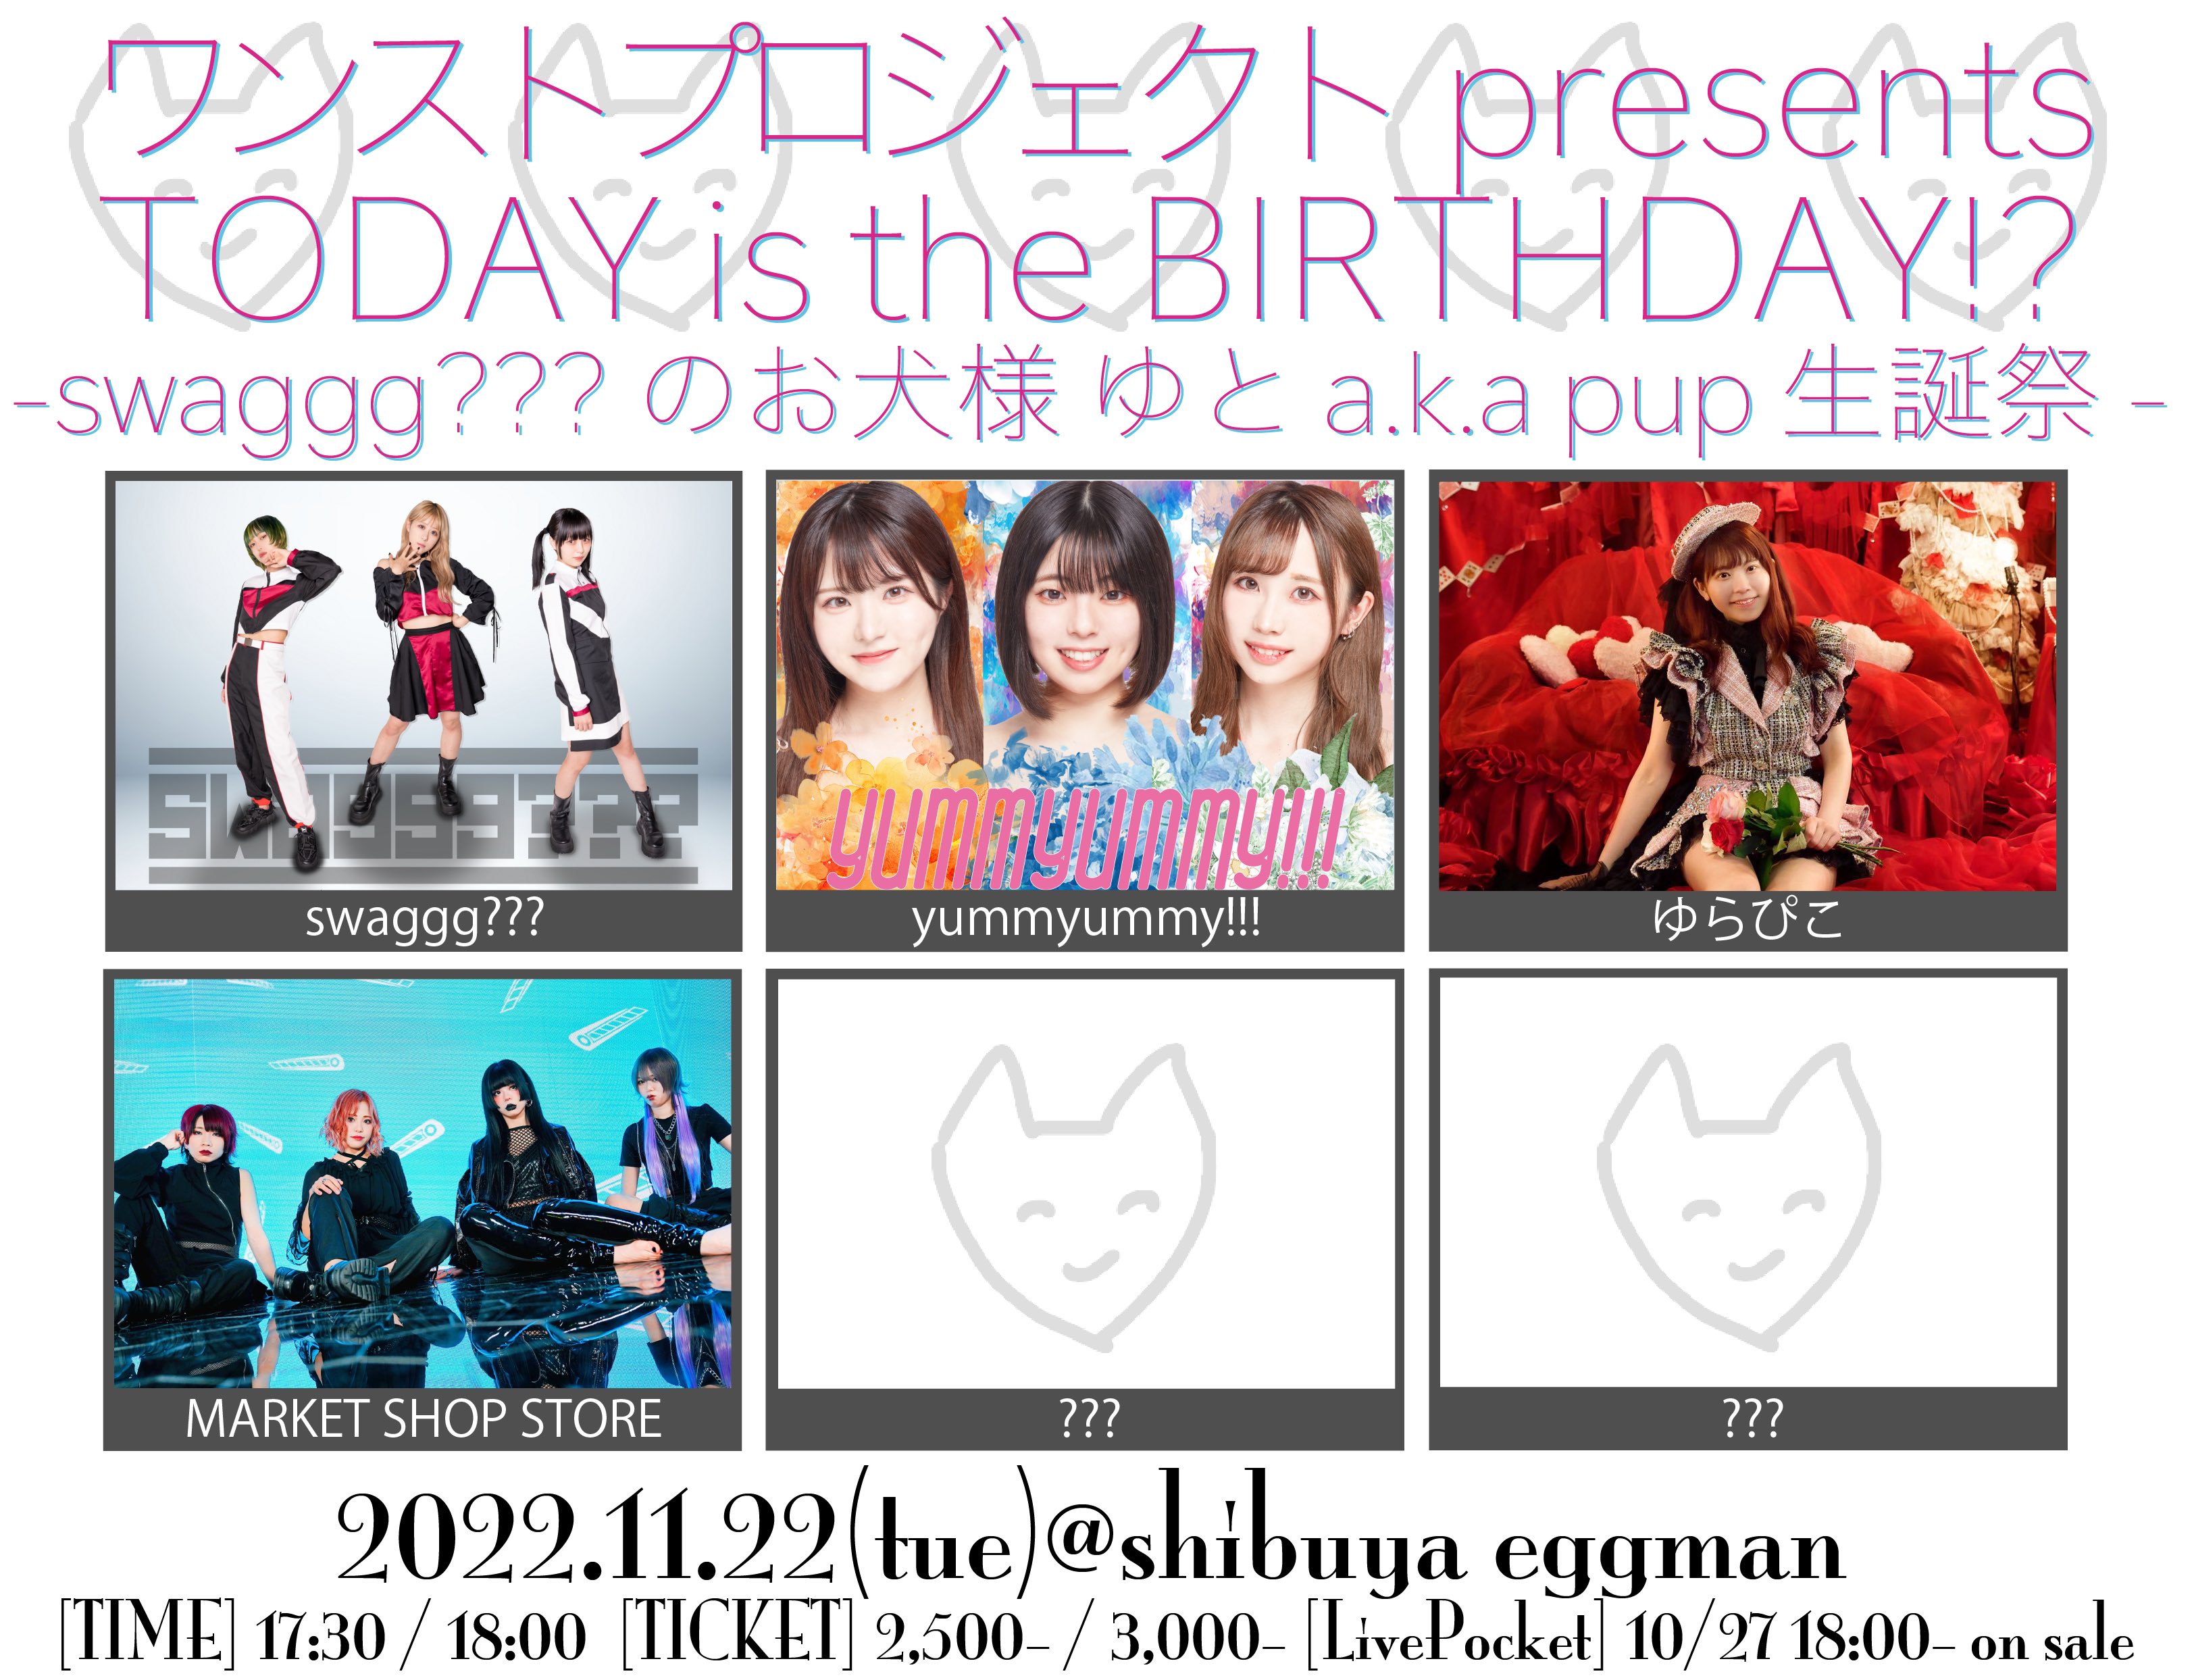 ワンストプロジェクト presents TODAY is the BIRTHDAY!? -swaggg???のお犬様 ゆと a.k.a pup 生誕祭-